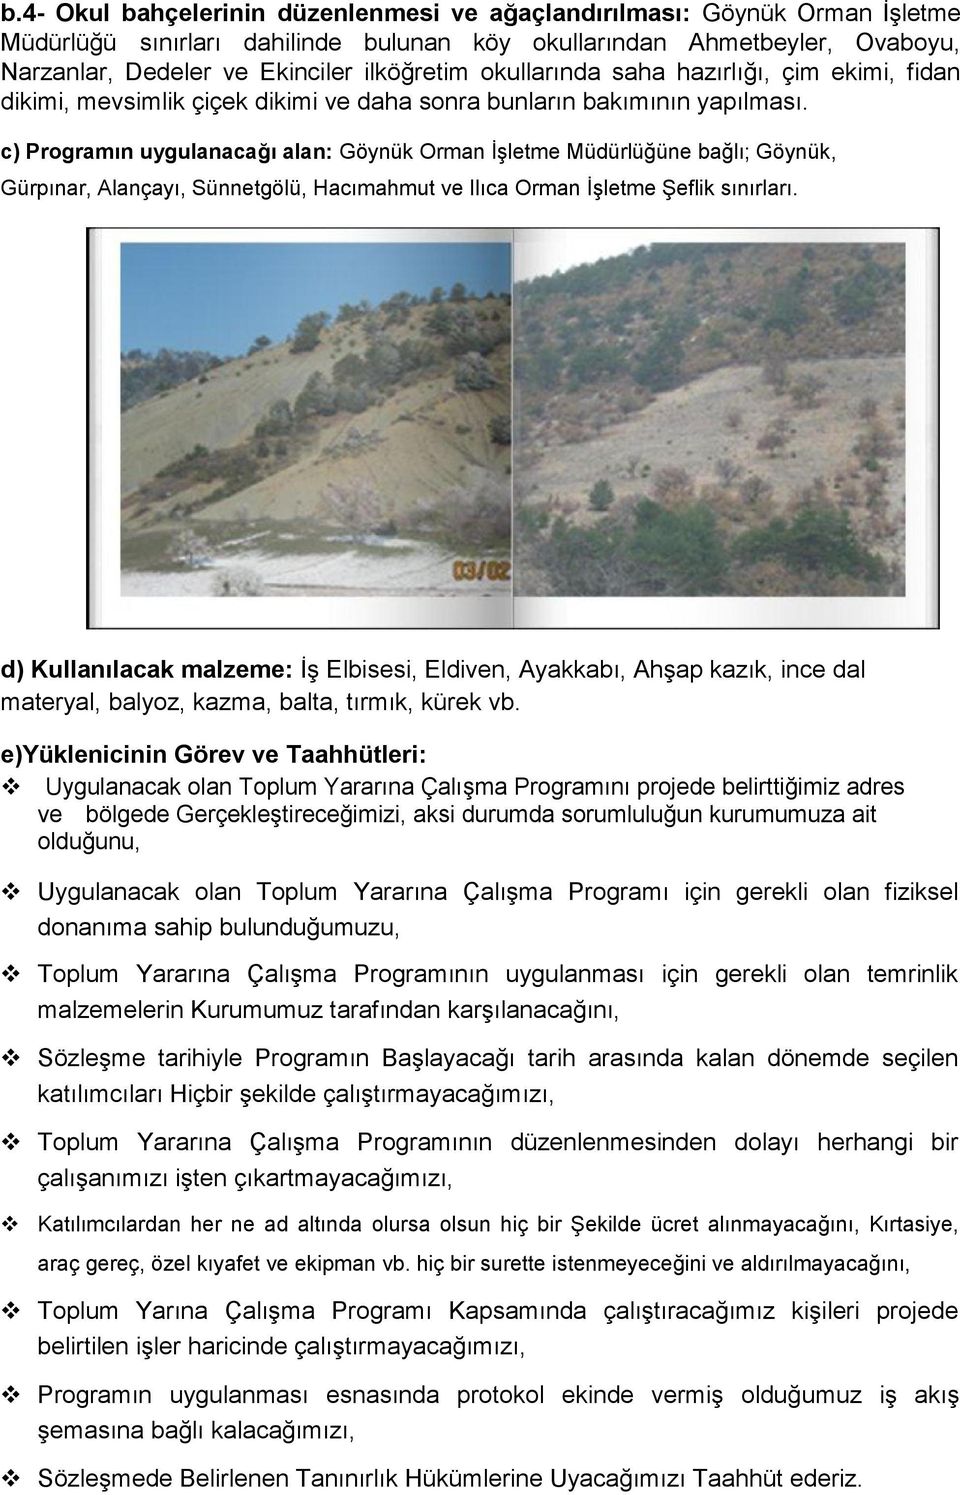 c) Programın uygulanacağı alan: Göynük Orman İşletme Müdürlüğüne bağlı; Göynük, Gürpınar, Alançayı, Sünnetgölü, Hacımahmut ve Ilıca Orman İşletme Şeflik sınırları.